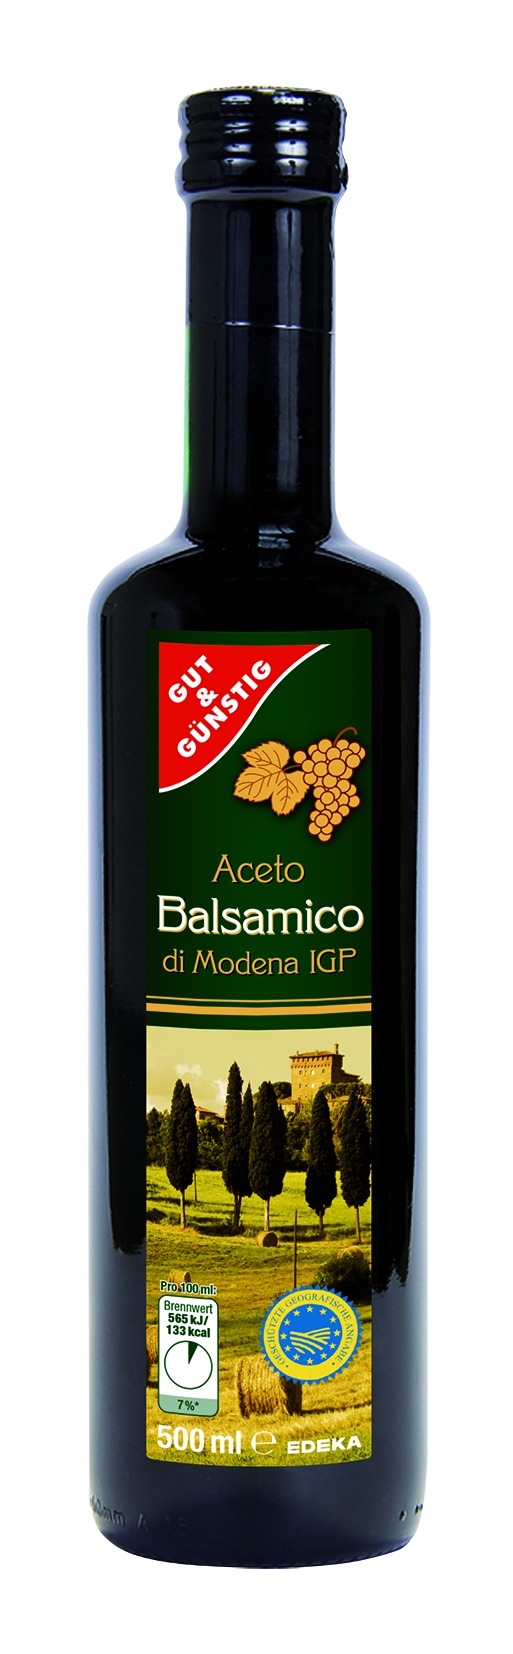 Aceto Balsamico Di Modena IGP   